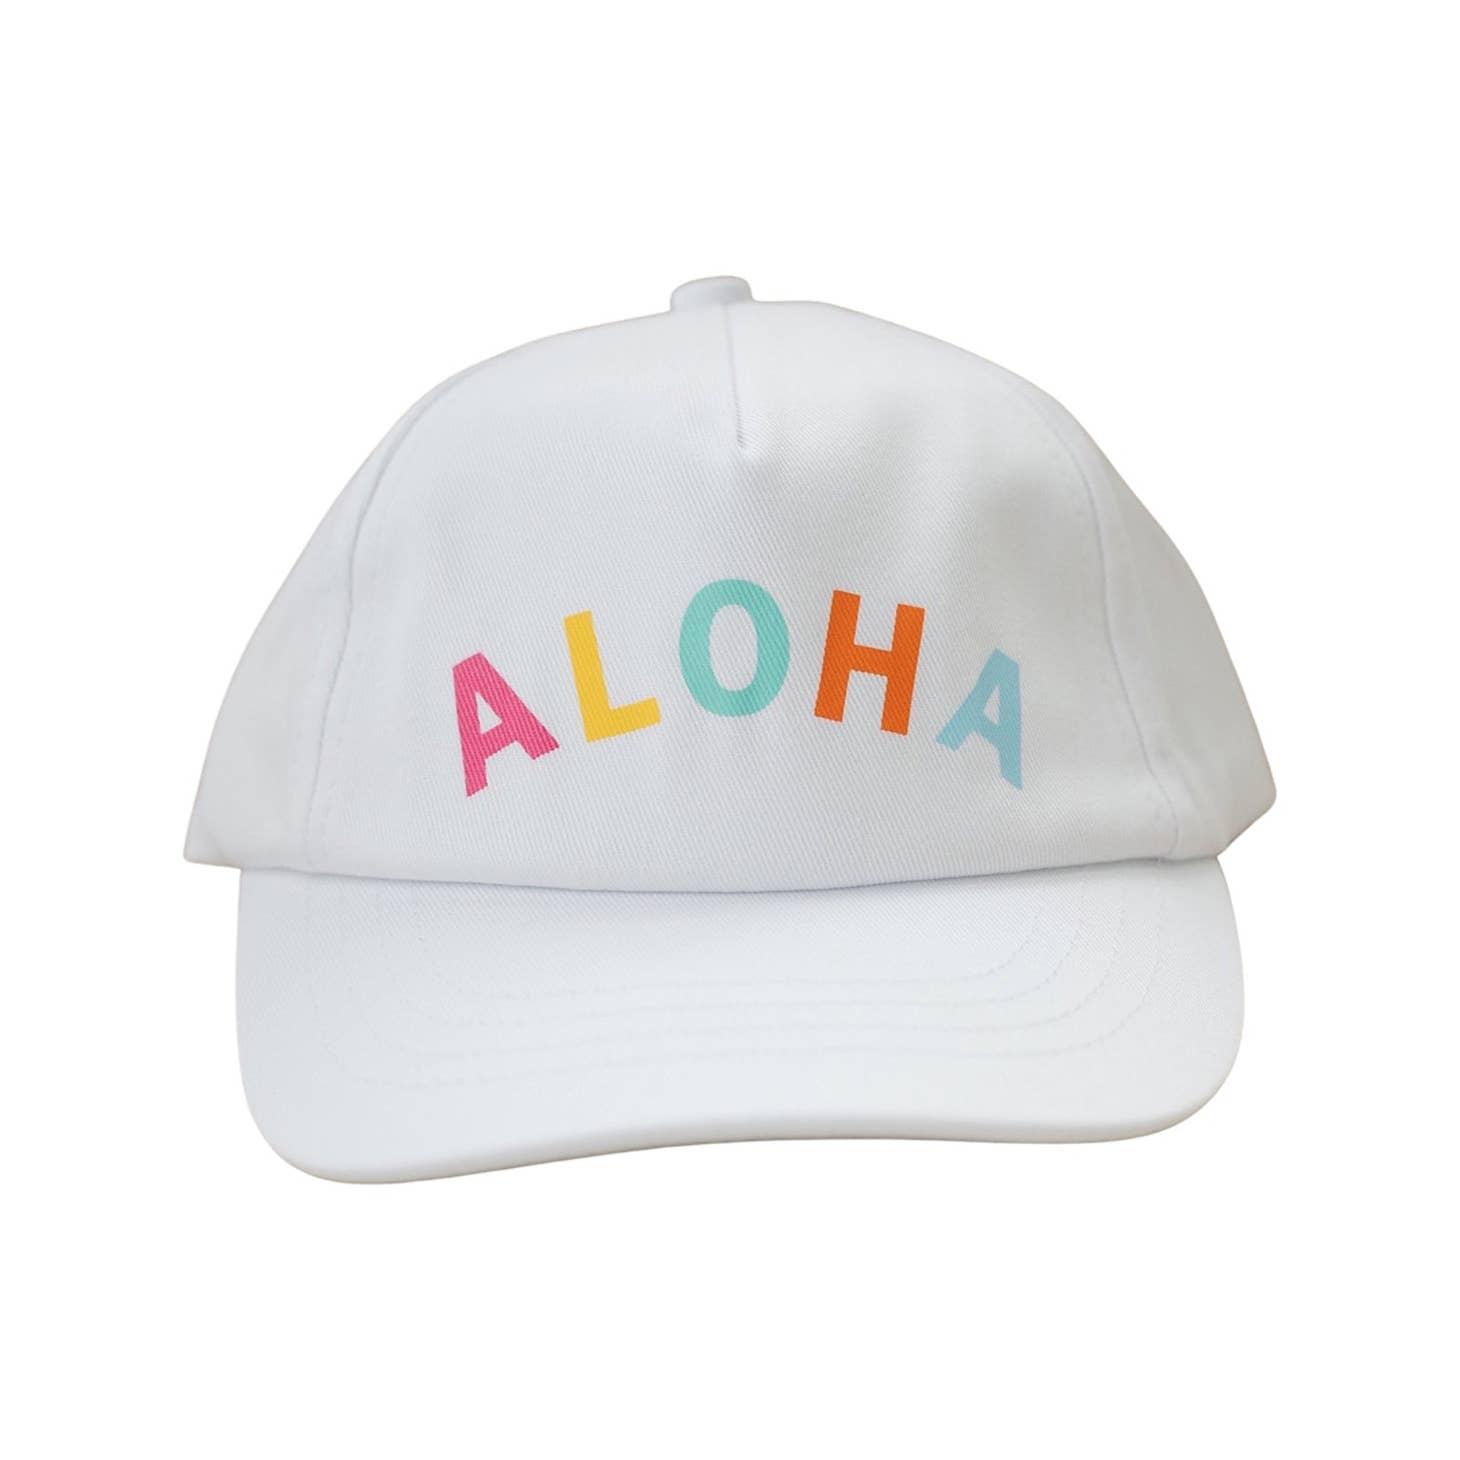 Cash & Co Hat - Aloha